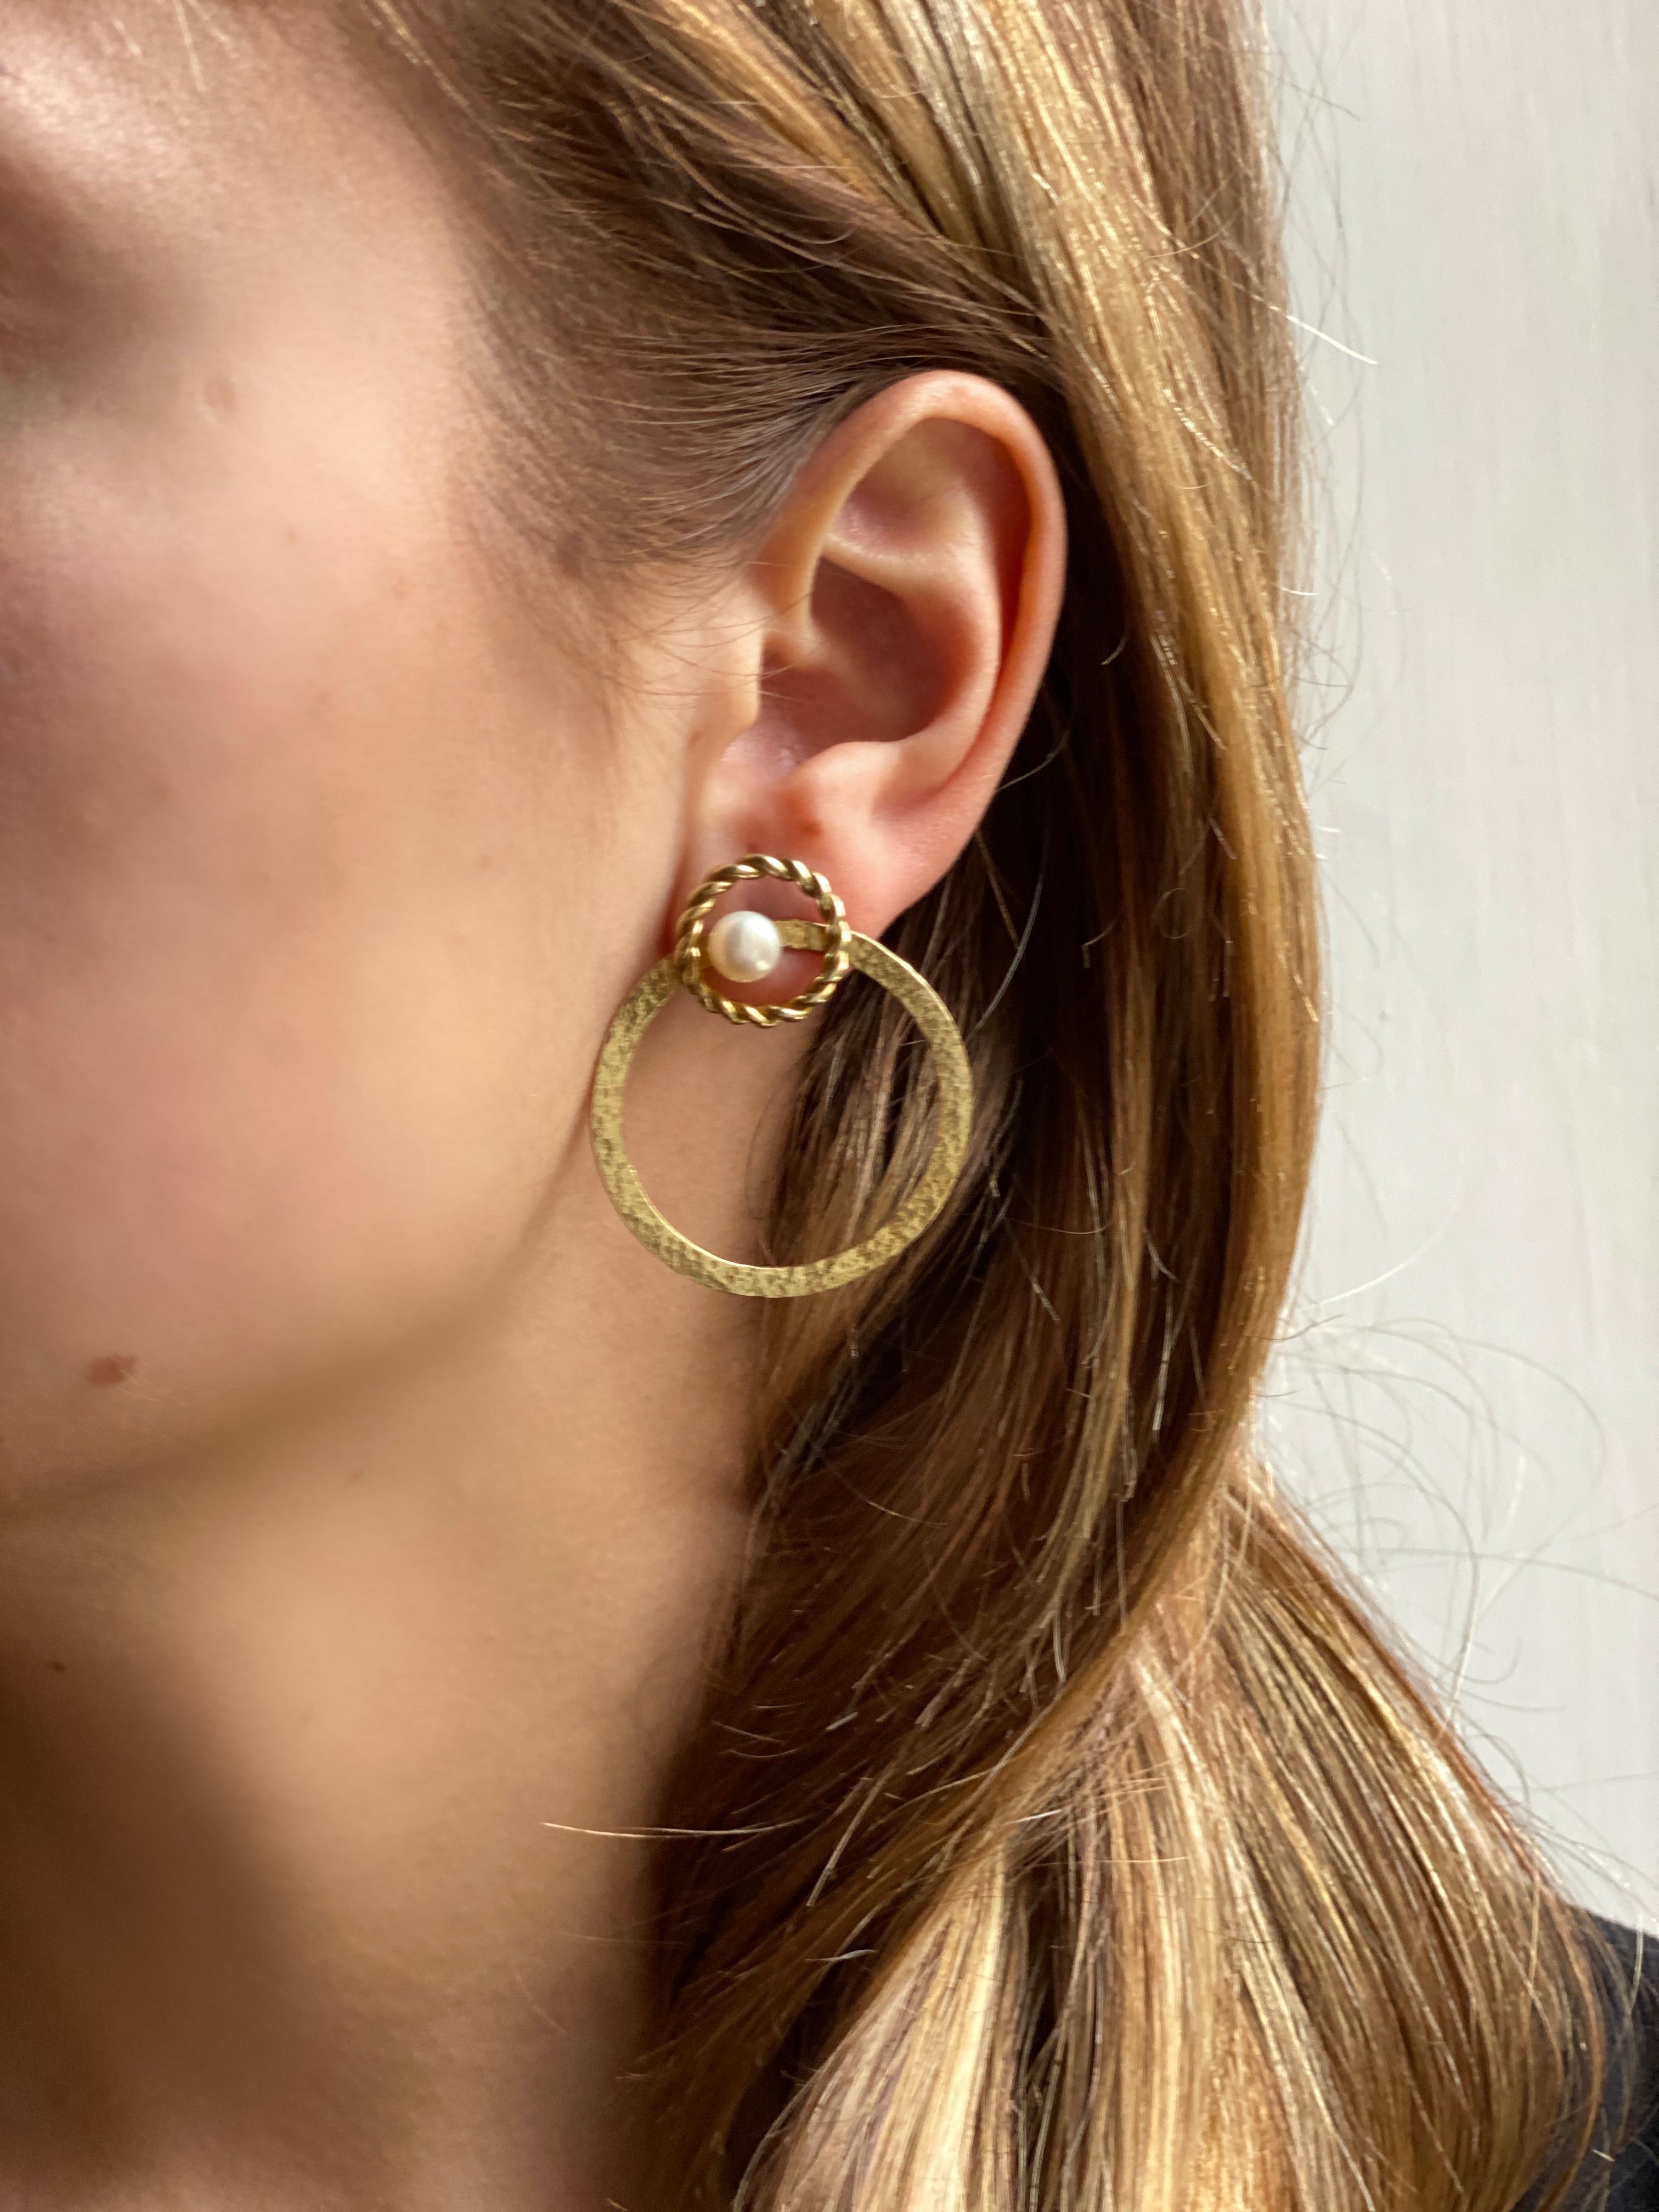 Entdecken Sie Eleganz in Bewegung mit Rossella Ugolinis gehämmerten Ohrringen aus 18 Karat Gelbgold mit offenem Reif und großem Kreis, die in Handarbeit hergestellt wurden. Diese in sorgfältiger Handarbeit gefertigten Ohrringe zeugen von